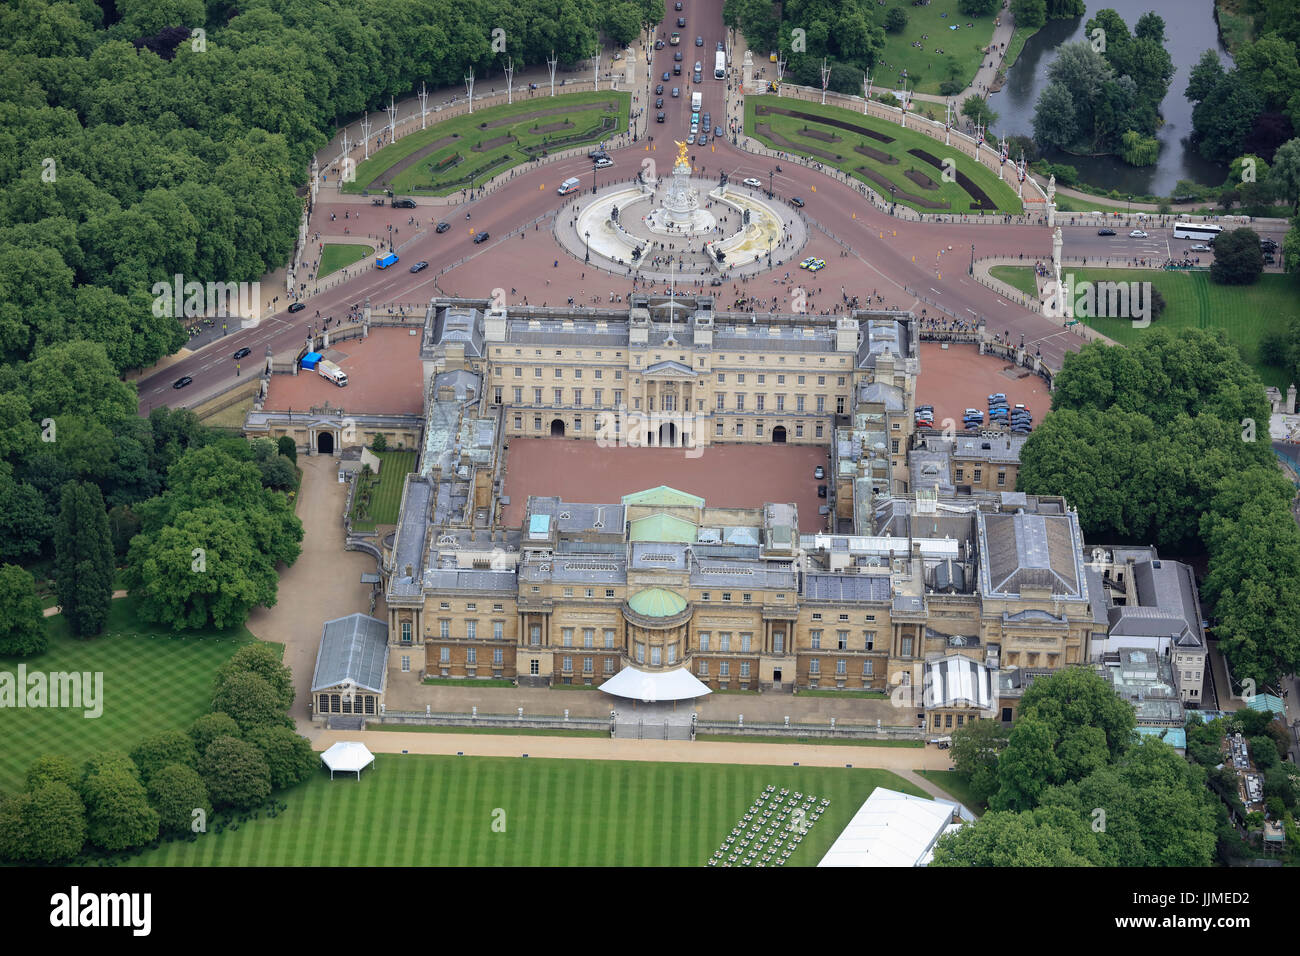 Une vue aérienne de l'arrière du palais de Buckingham à l'Albert Memorial et haut de la Mall visible Banque D'Images